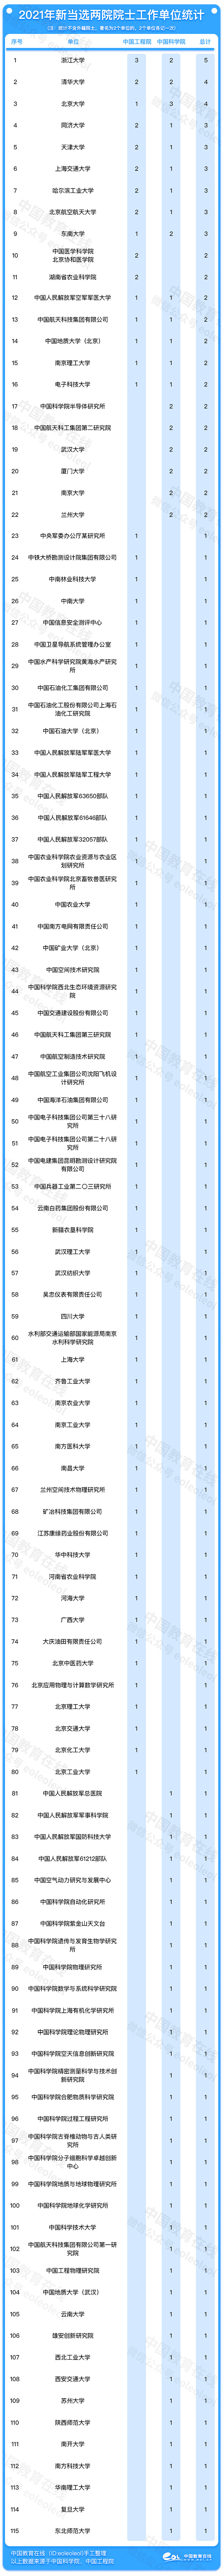 2021年两院院士增选结果正式揭晓   浙江大学新增院士数量高居榜首